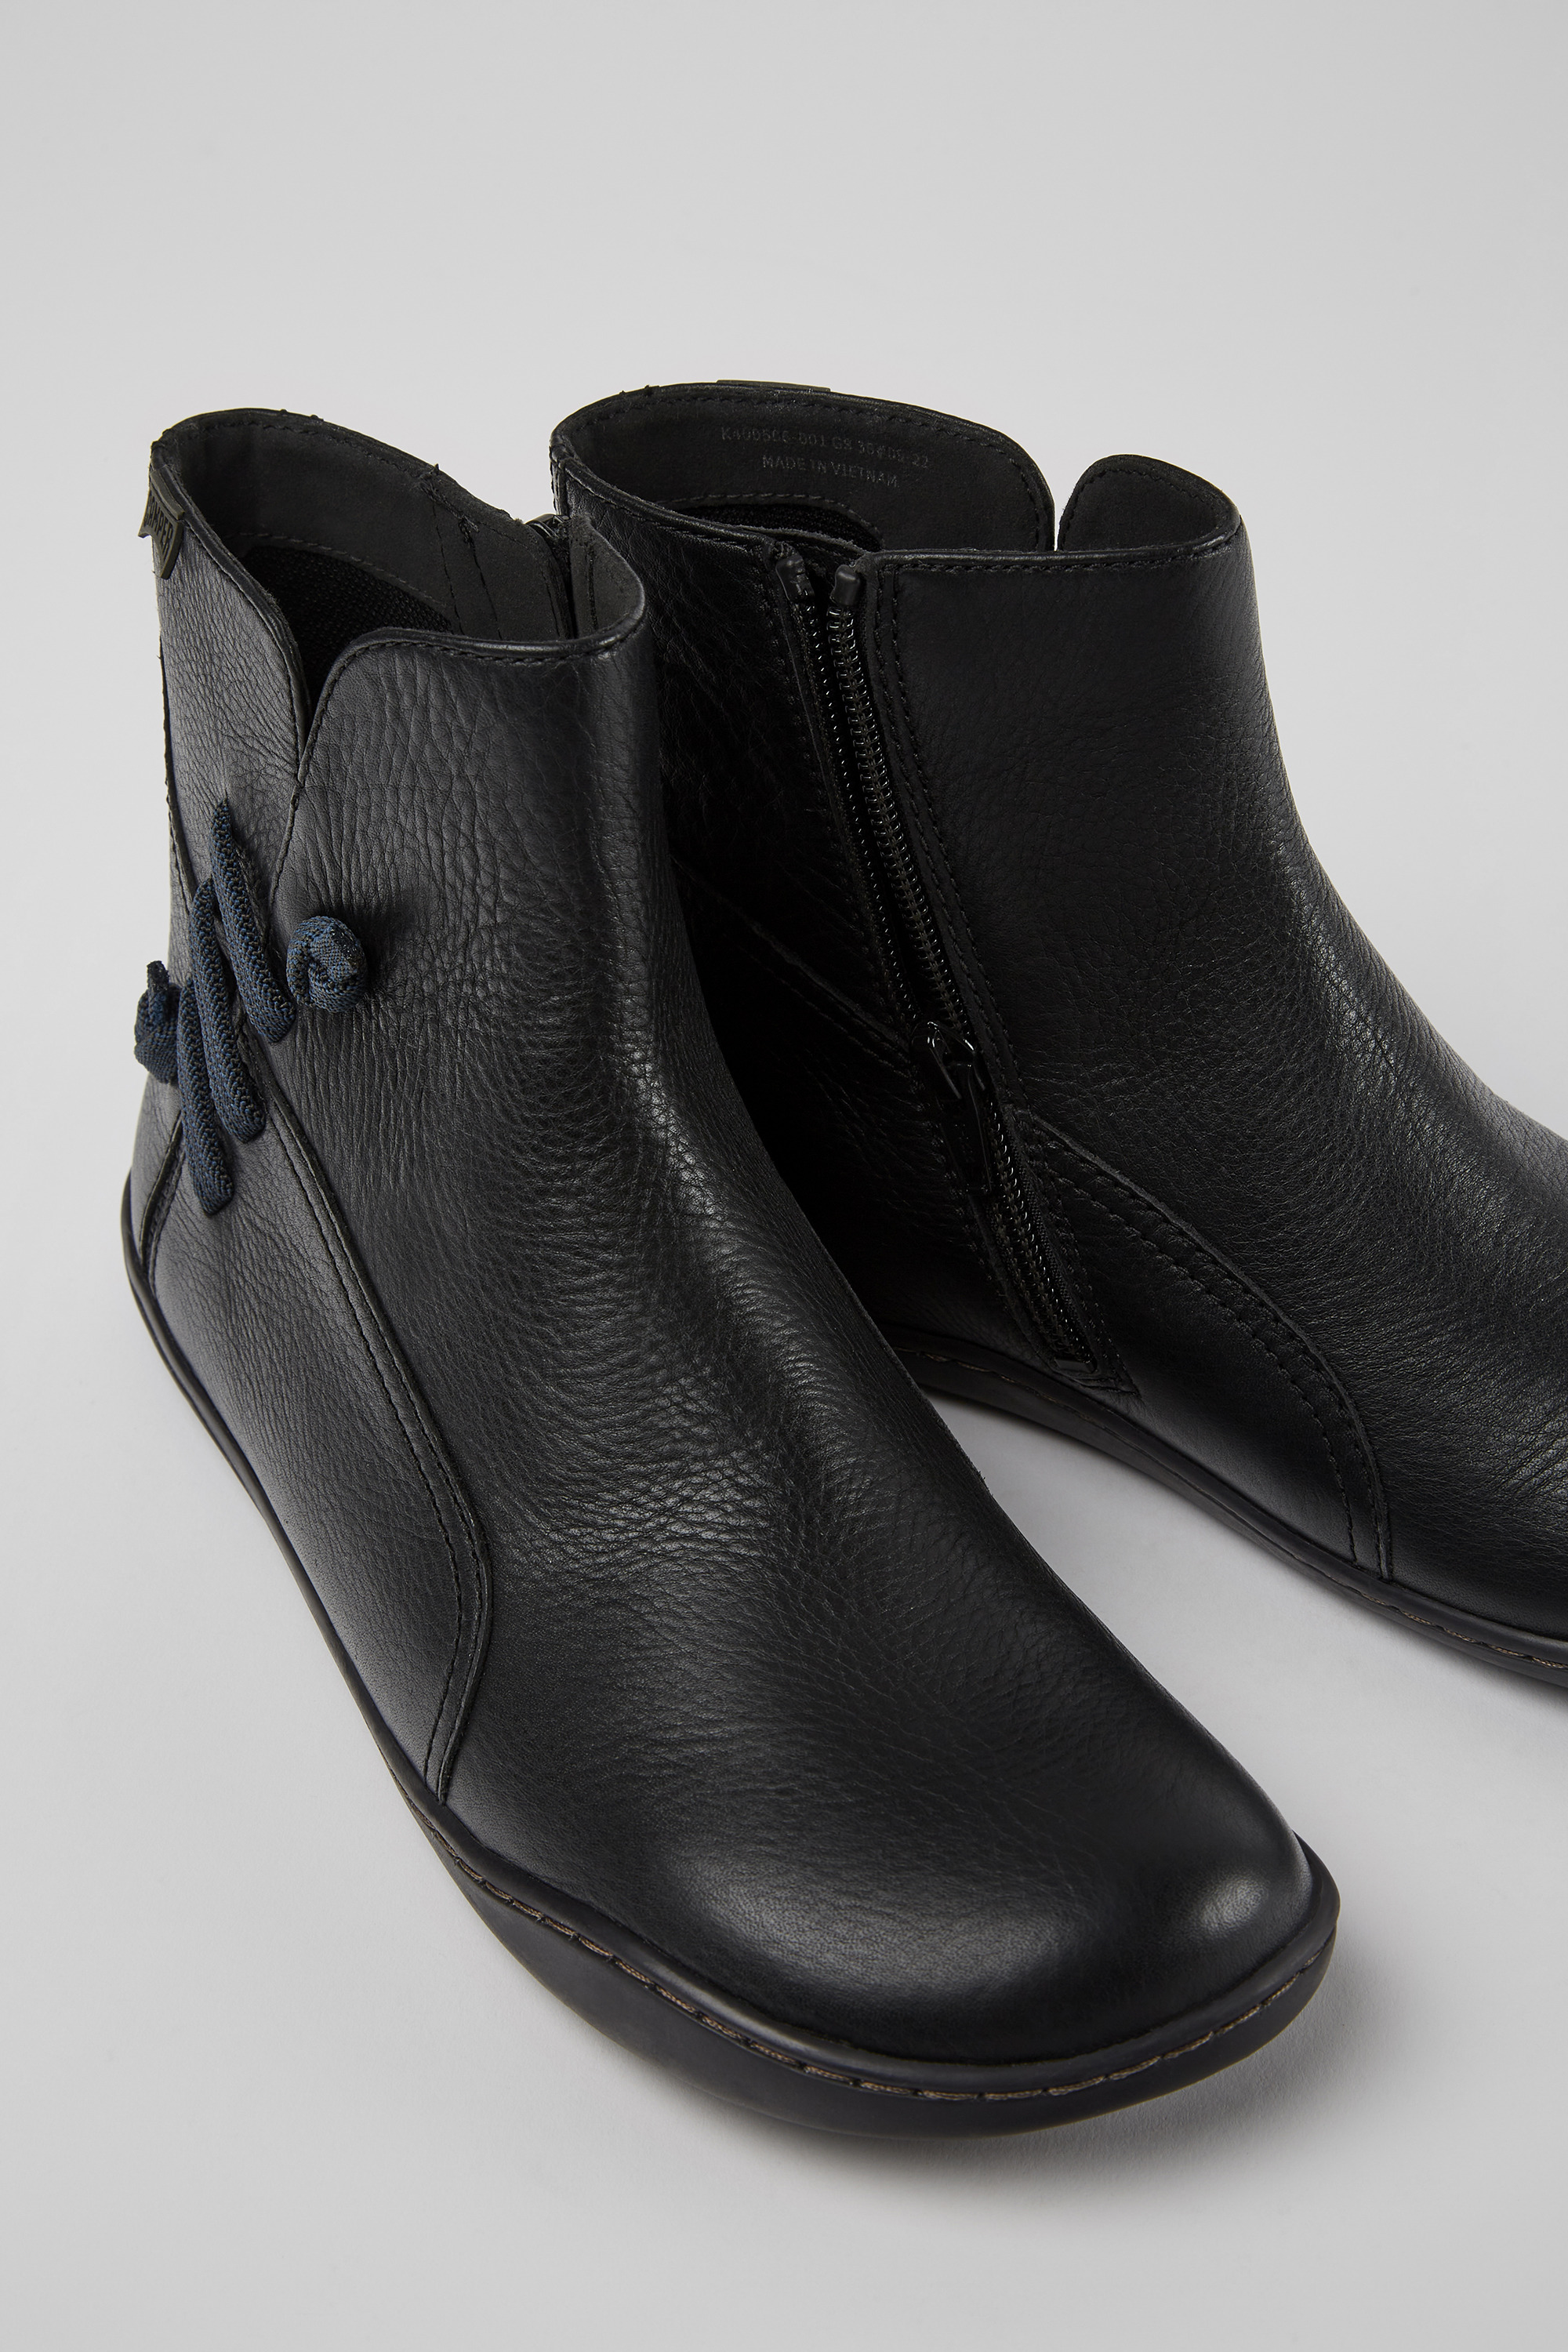 negro nuevo Camper zapatos botín cami Meteor k400506-001 black